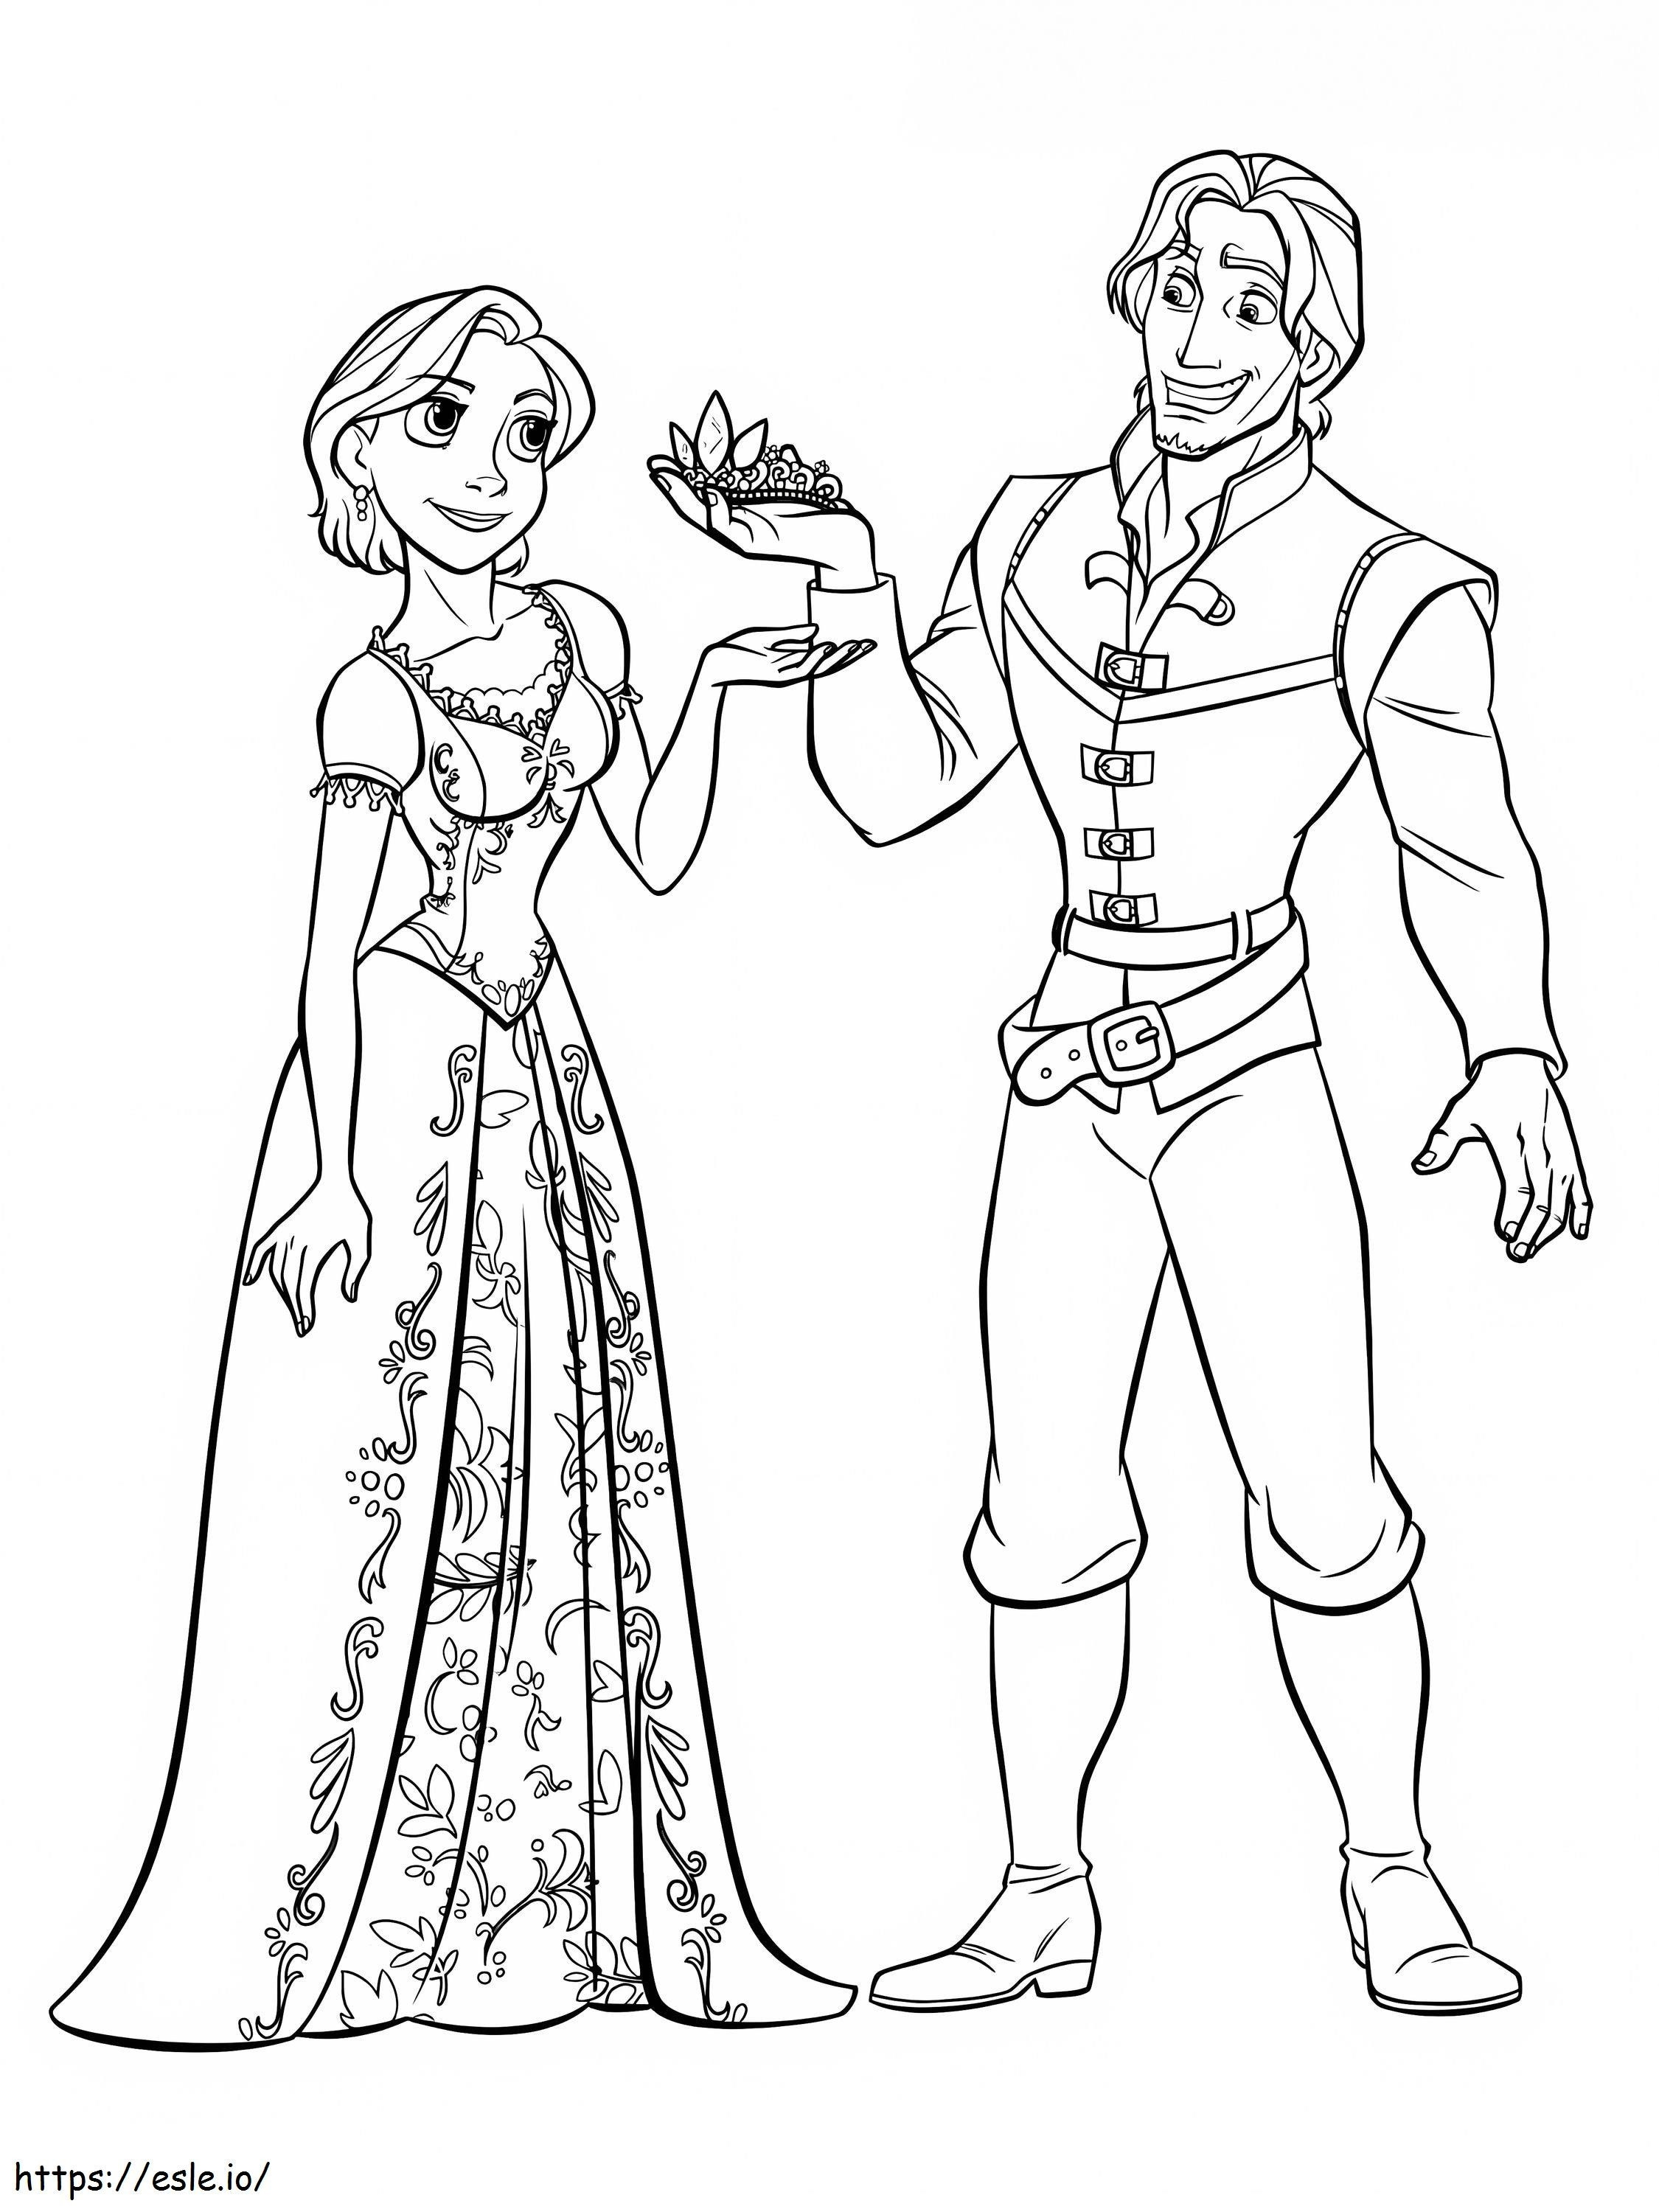 Funny Rapunzel și Flynn de colorat